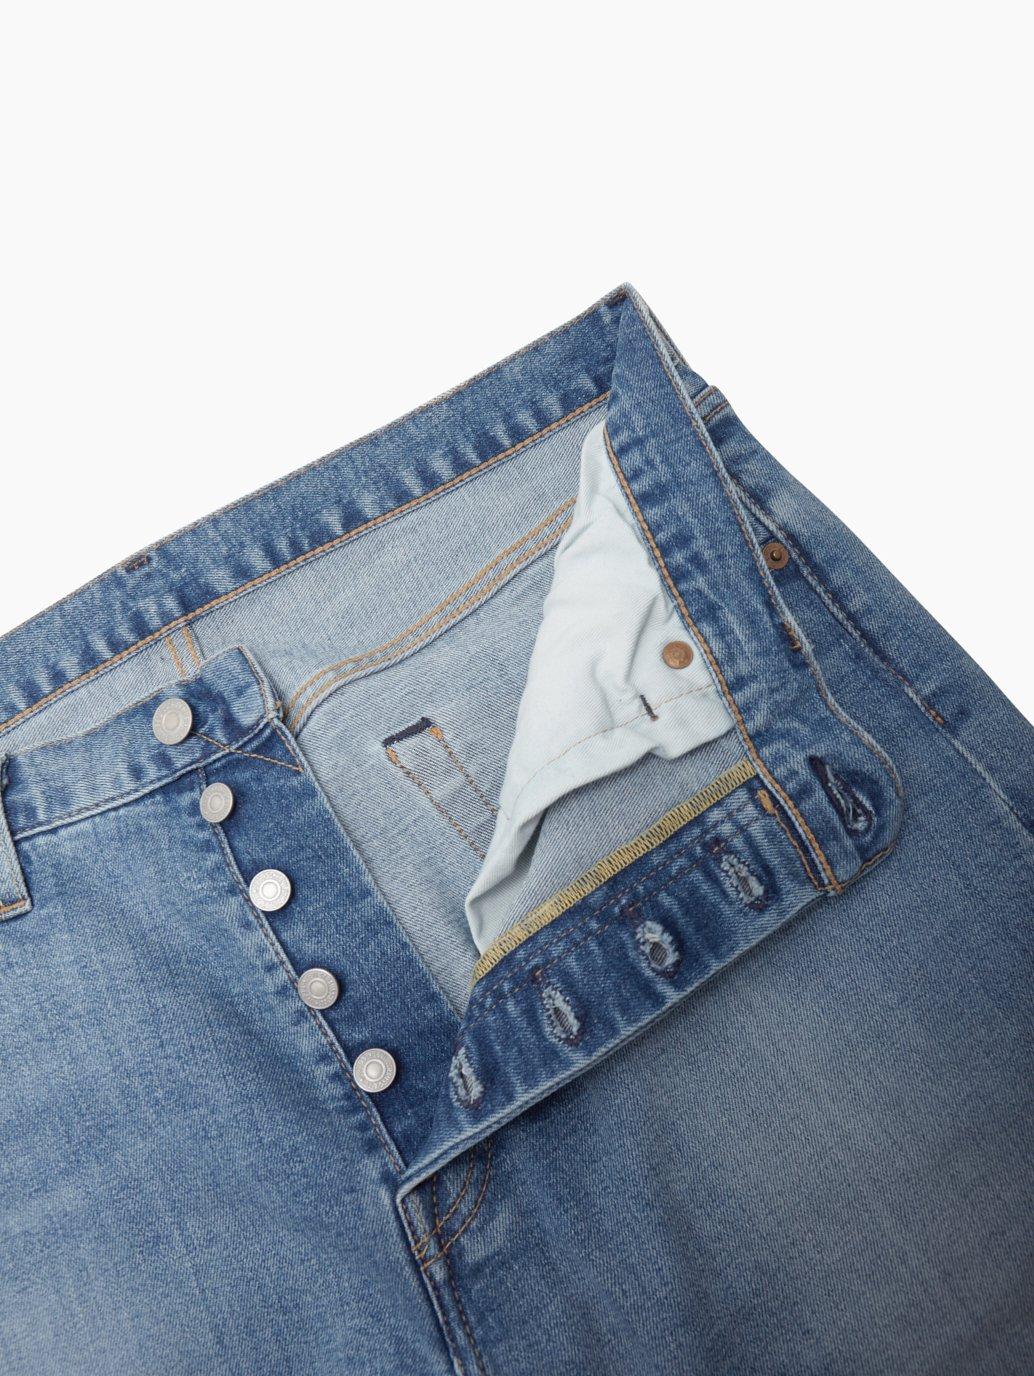 Buy Levi's® Men's 501® Original Jeans | Levi's® Official Online Store PH